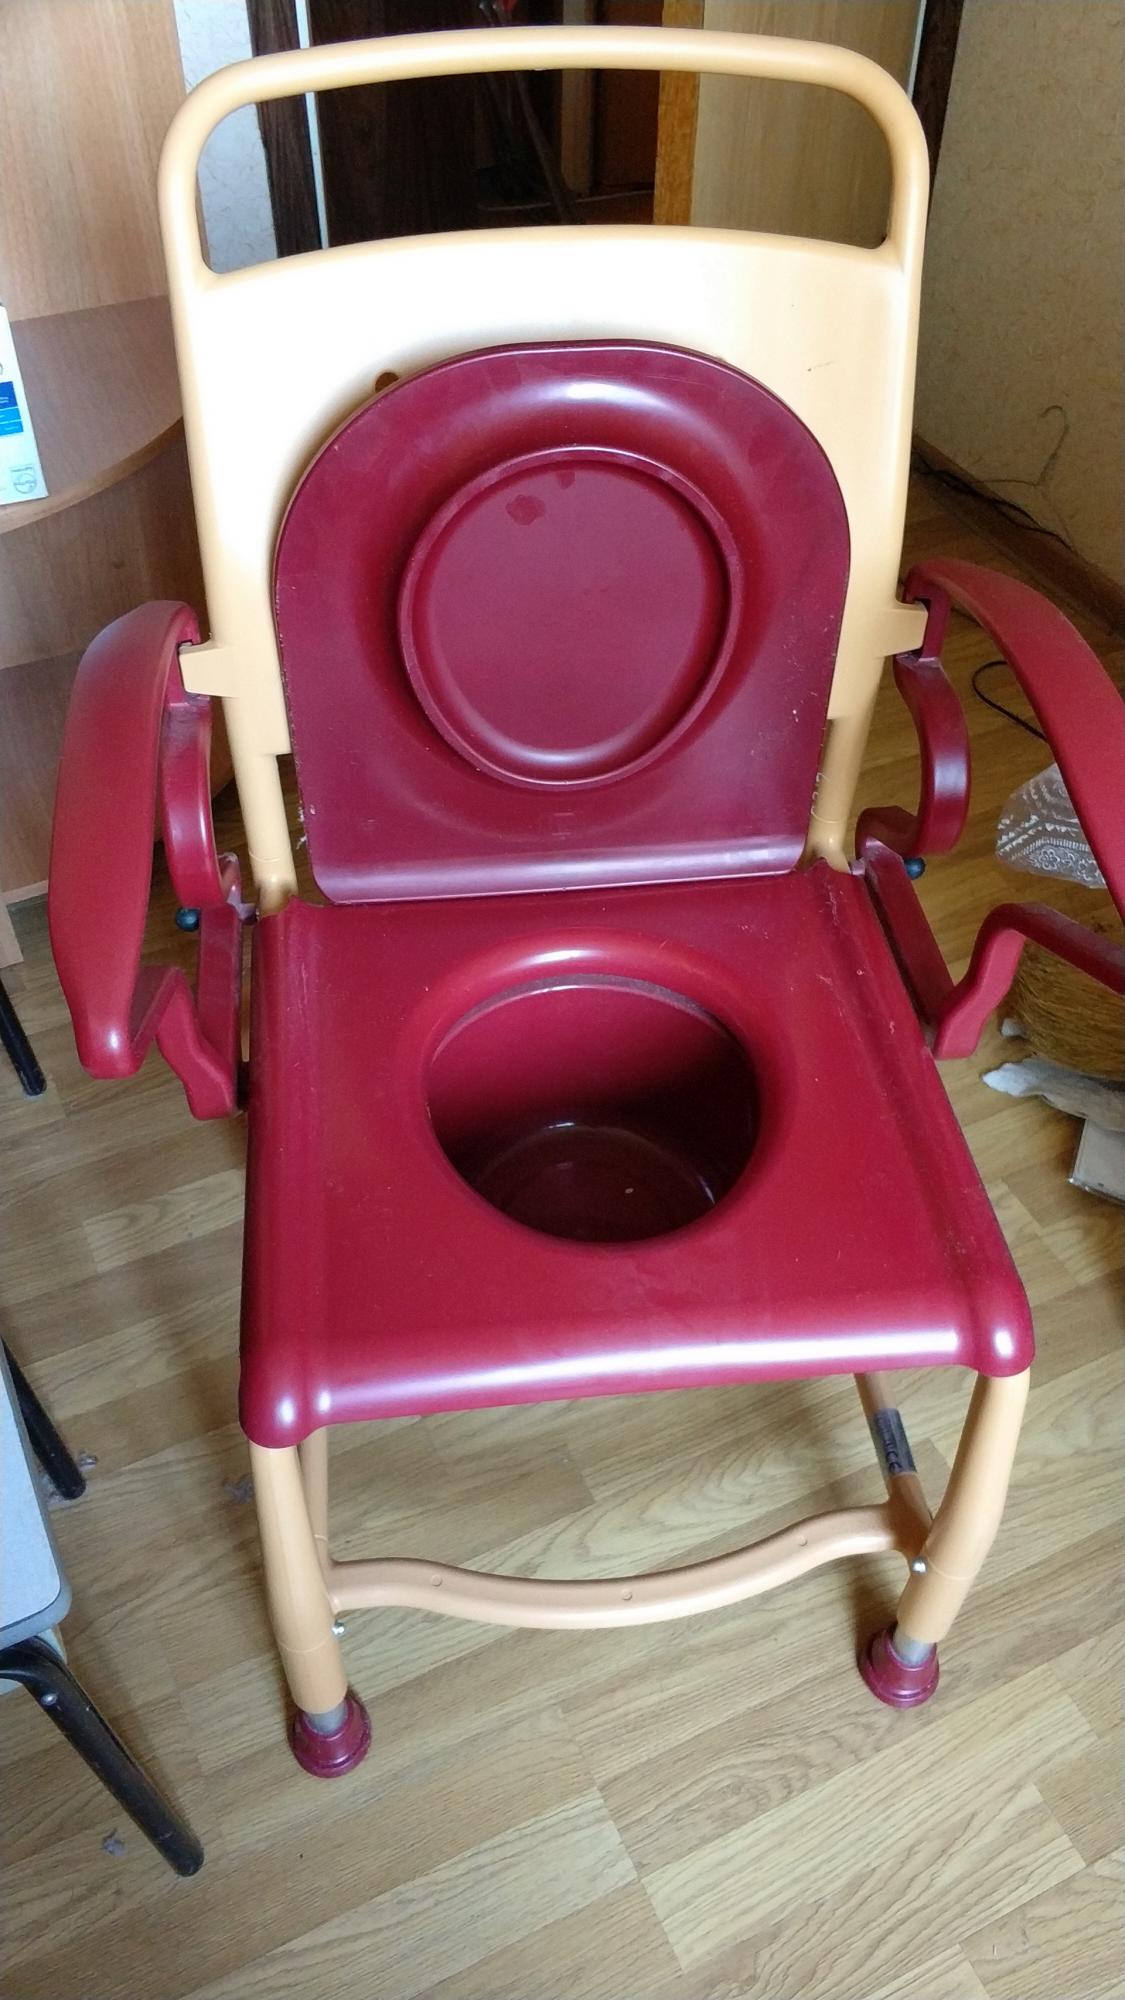 реботек стул с санитарным оснащением